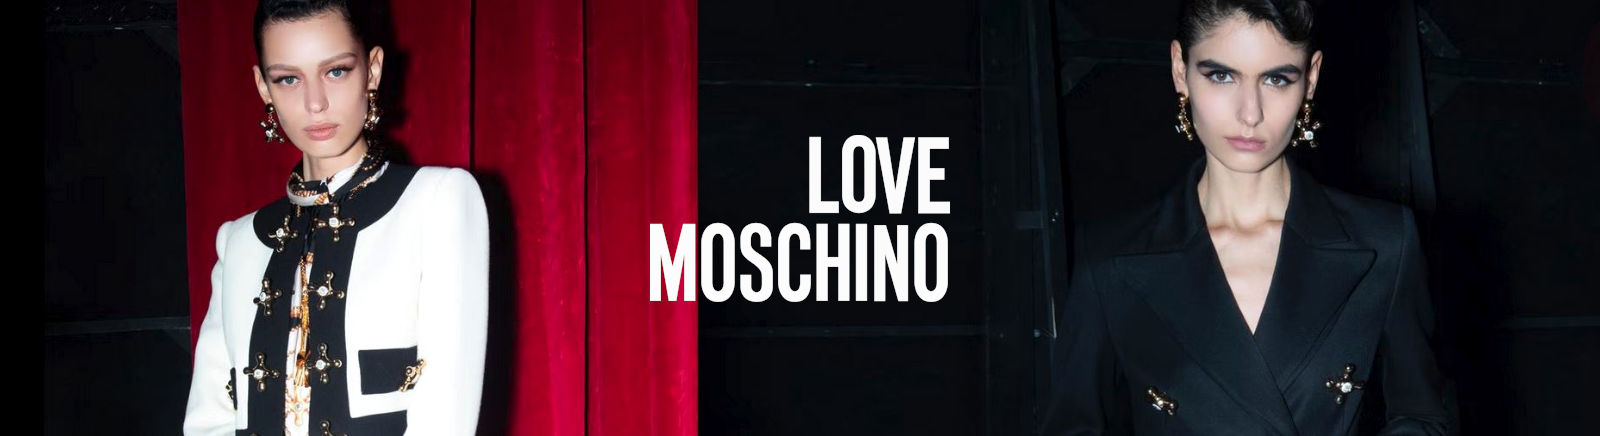 Love Moschino Damenschuhe online entdecken im Juppen Shop